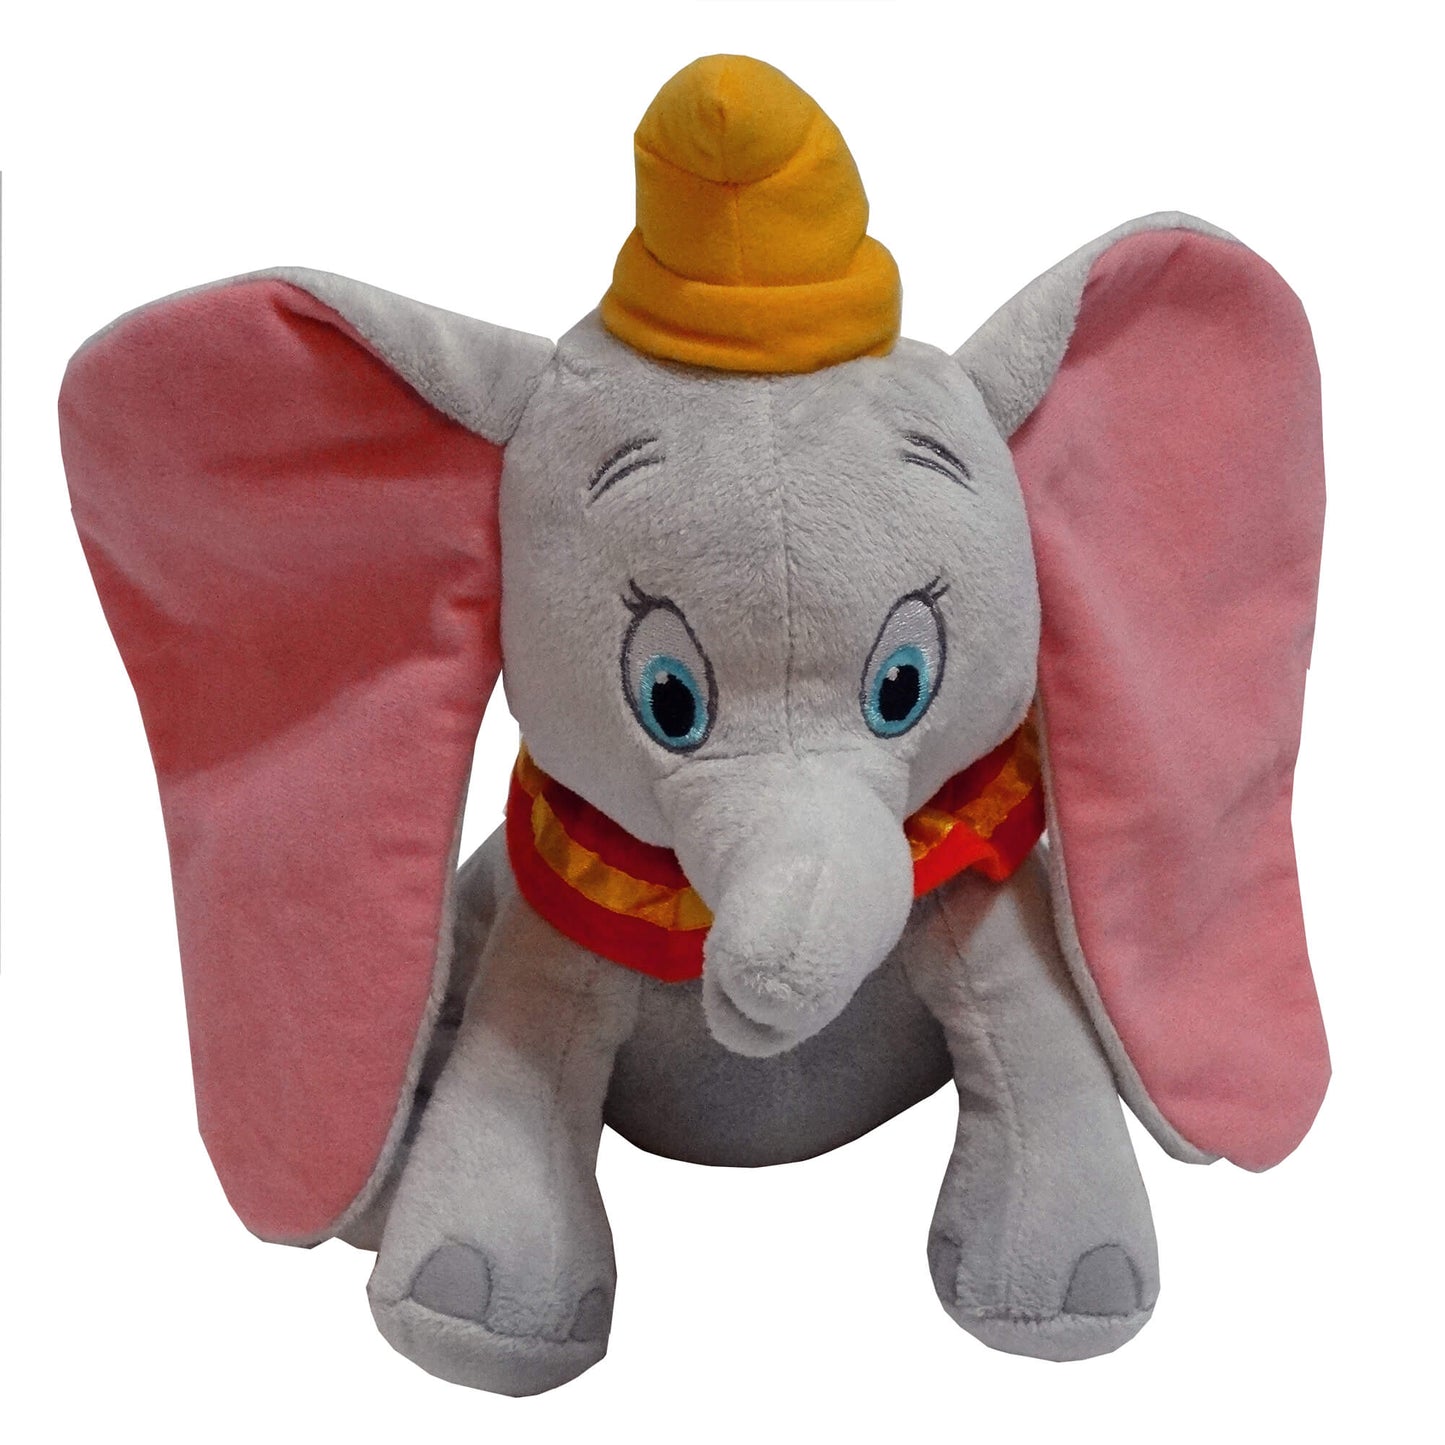 Disney-Dumbo-Flying-Elephant-Stuffed-Animal_Front-View